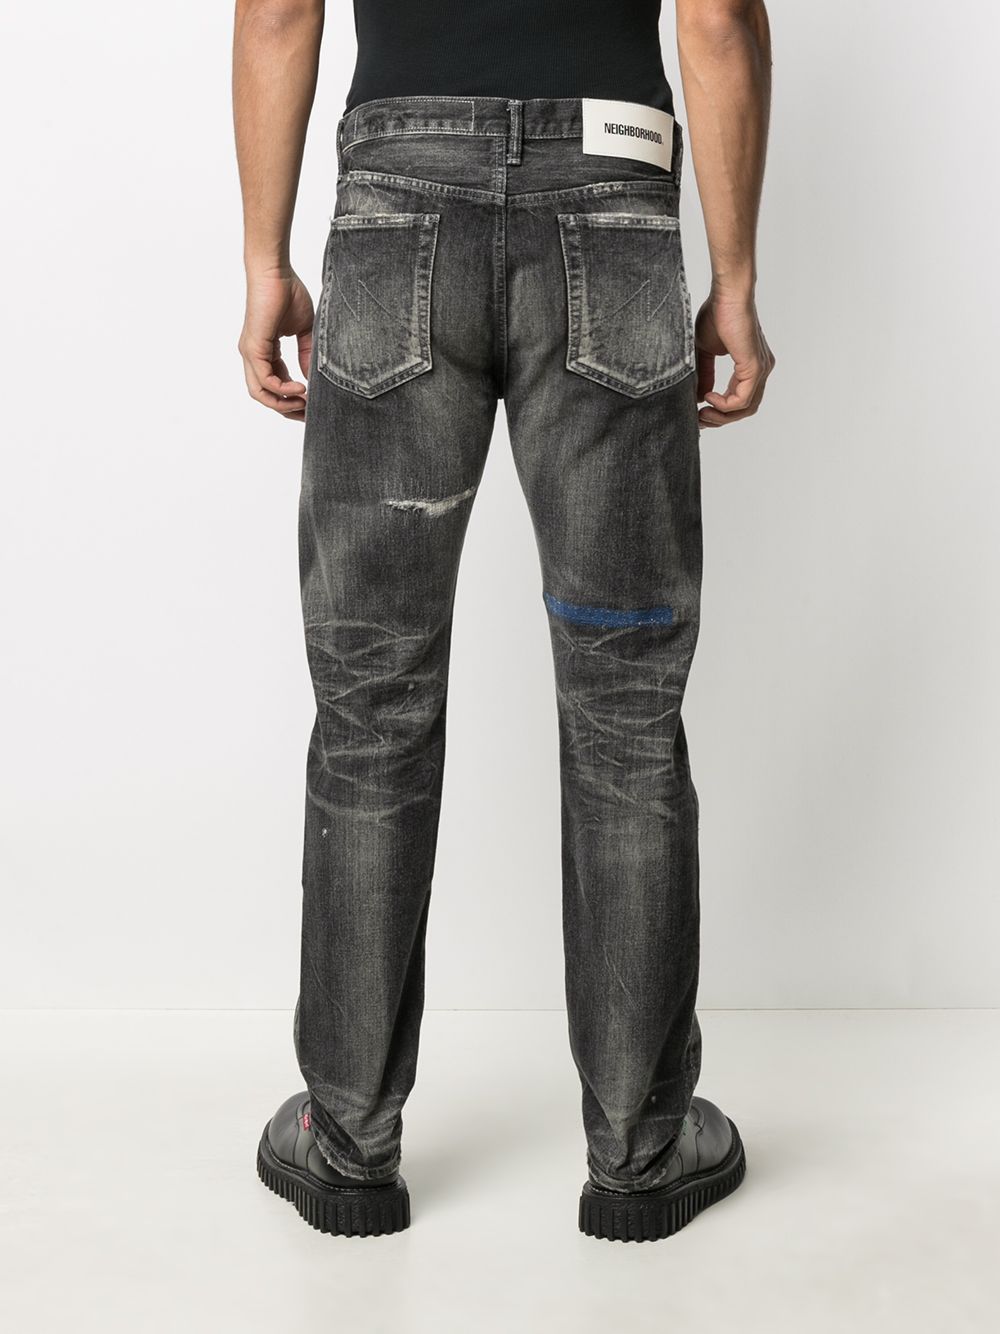 фото Neighborhood прямые джинсы с эффектом потертости